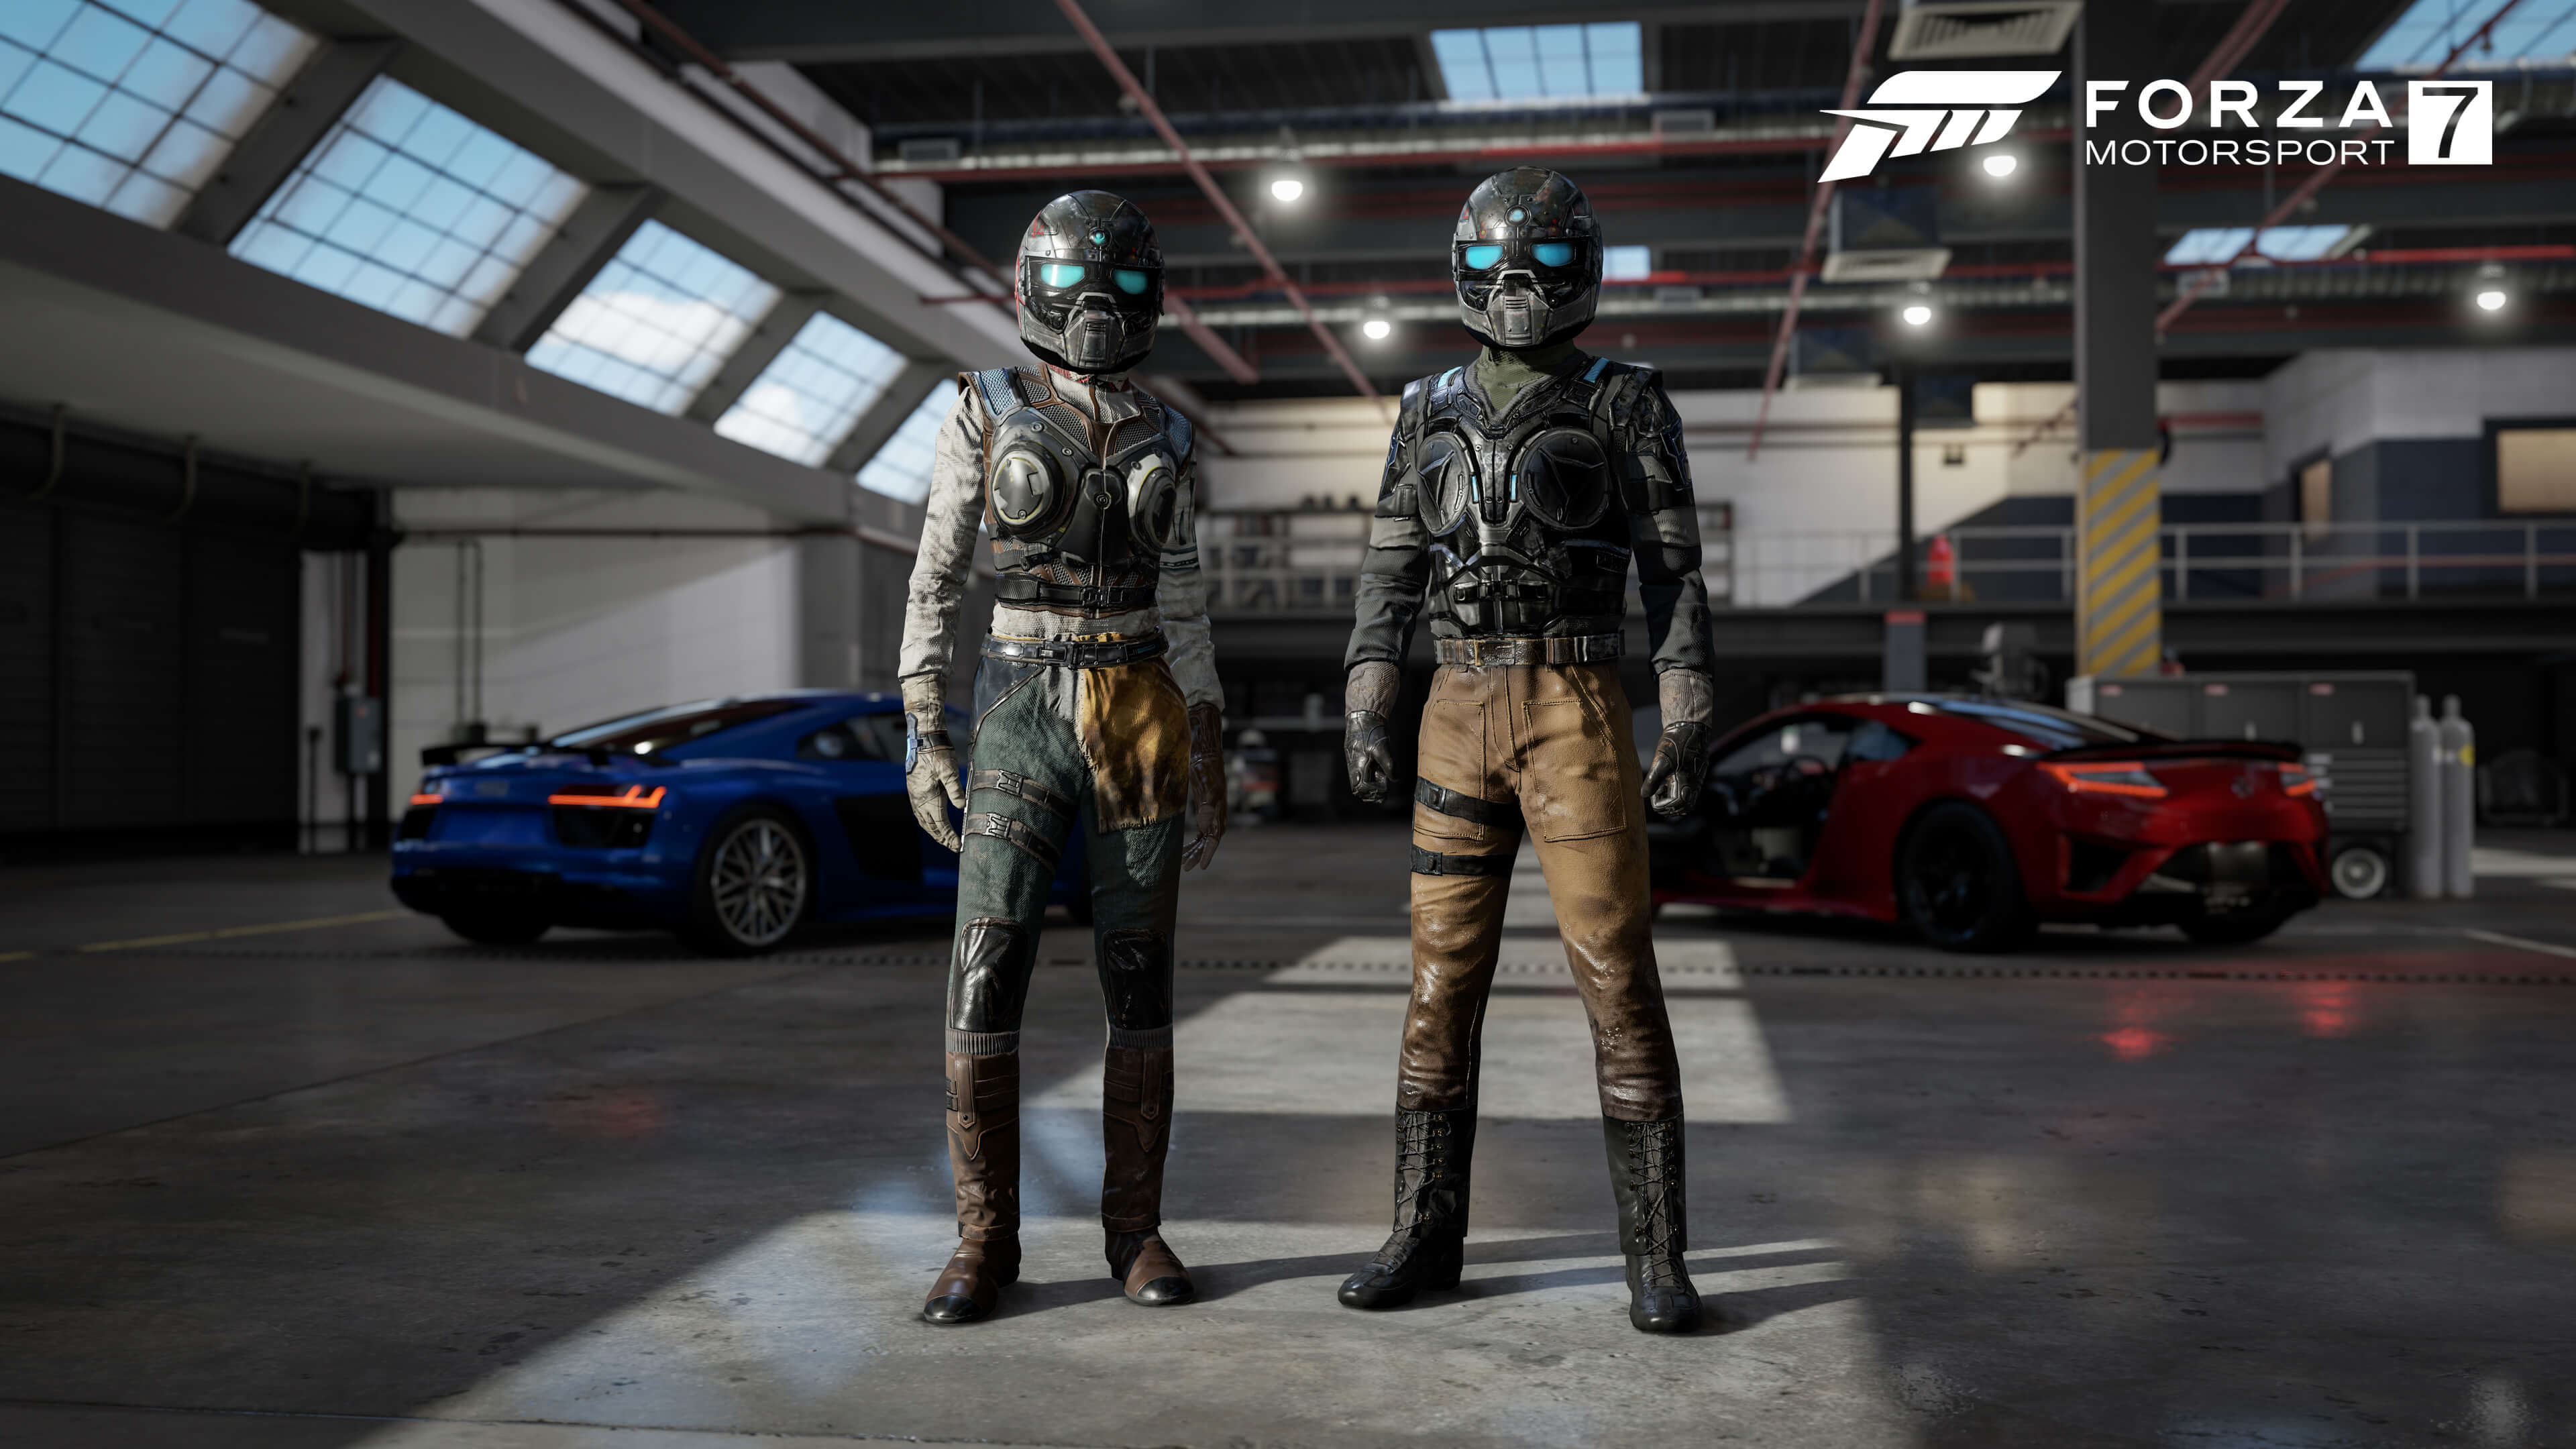 Roupas para Forza Motosport 7 inspirados em Gears of War